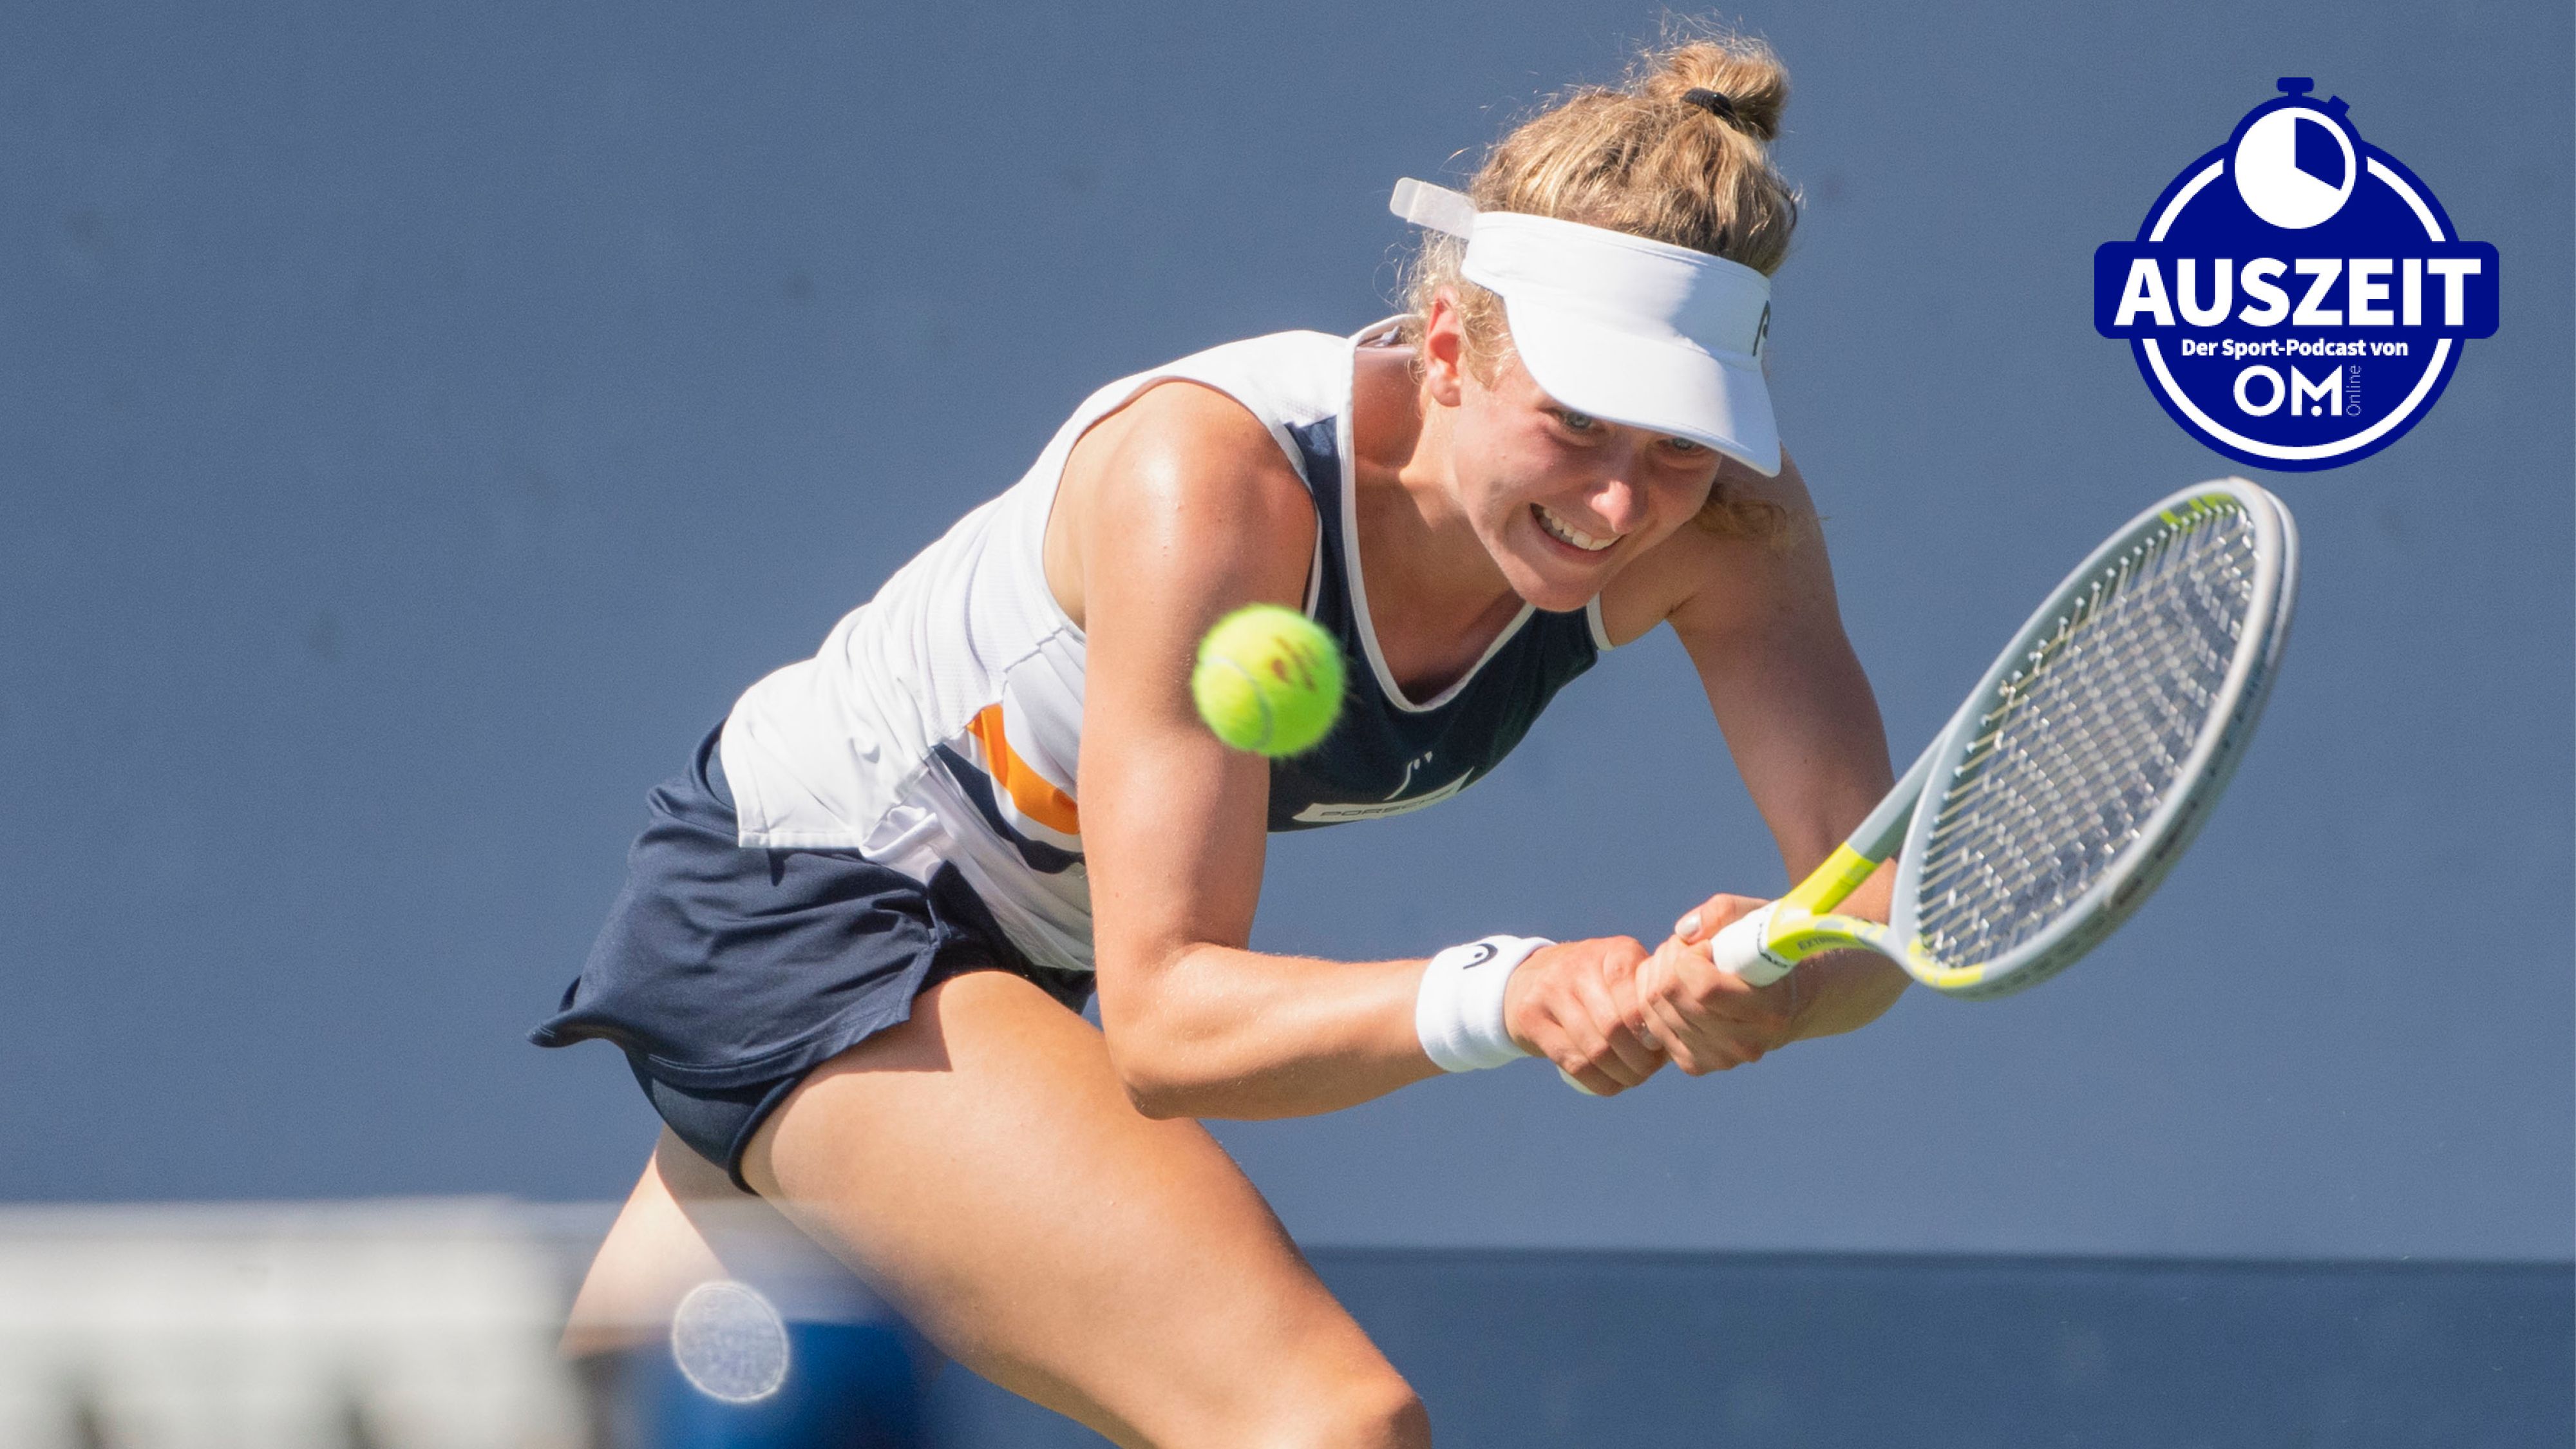 Voller Fokus auf den Grand-Slam-Traum: Julia Middendorf arbeitet an einer großen Tenniskarriere. Foto: Hasenkopf